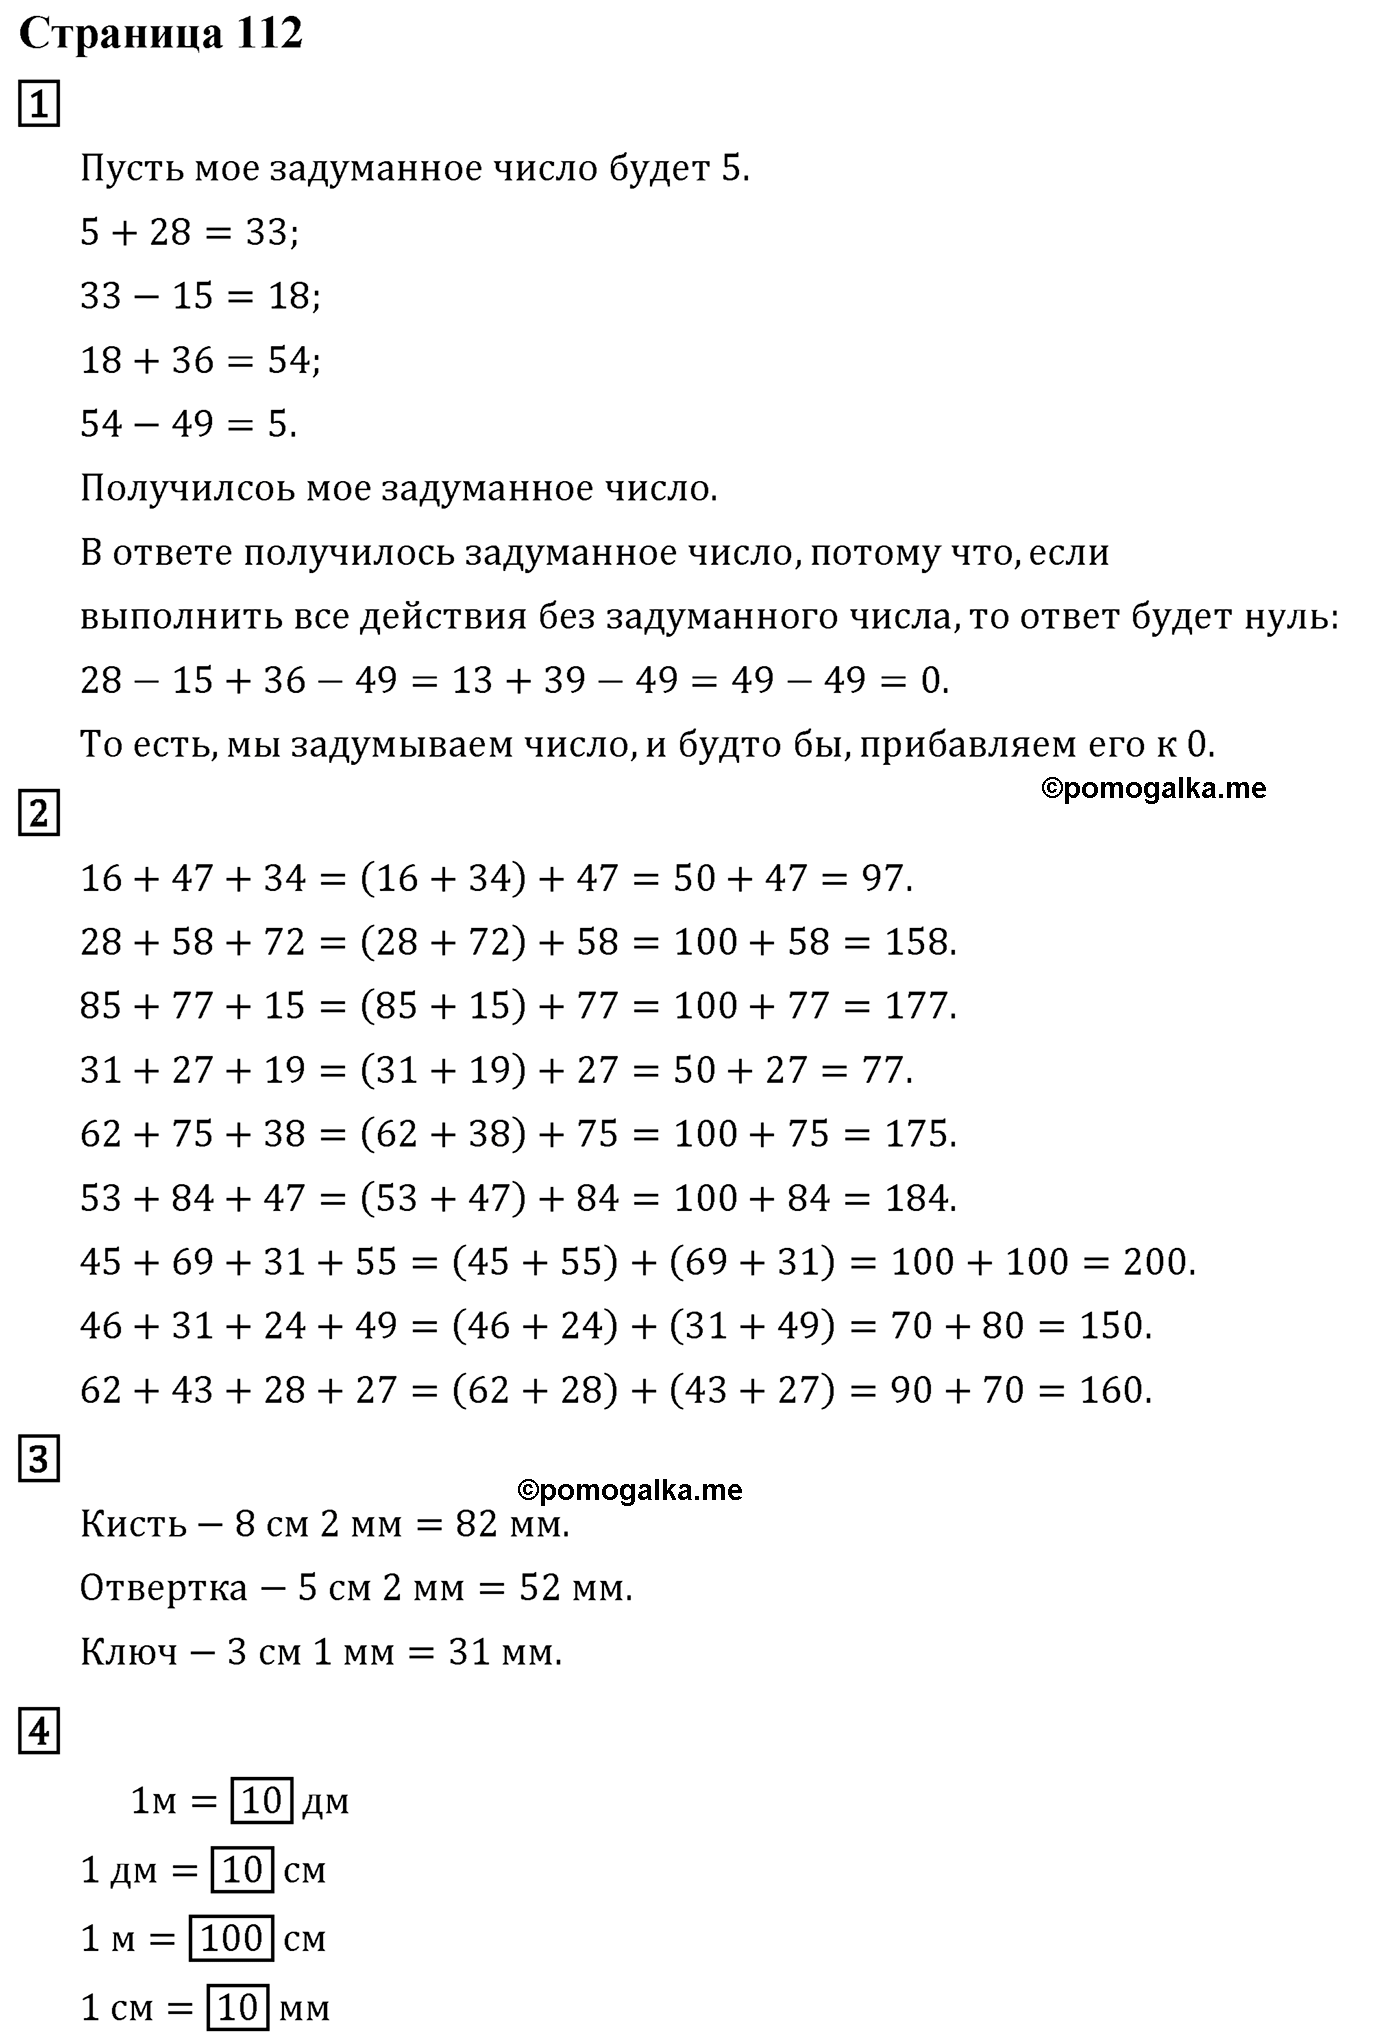 Страница №112 Часть 1 математика 4 класс Дорофеев